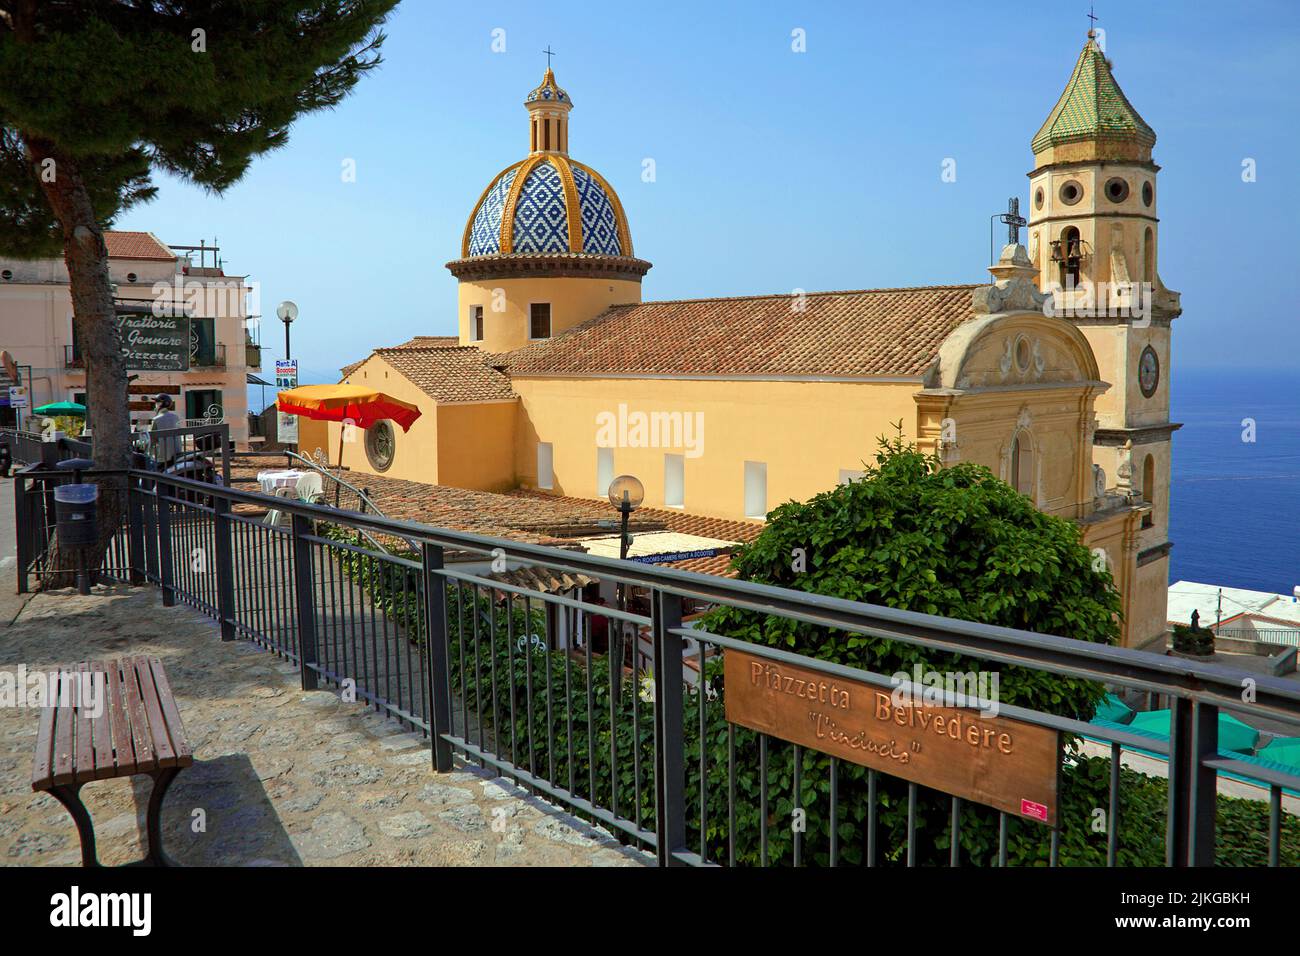 Chiesa di San Gennaro nel villaggio Praiano, Costiera Amalfitana, Patrimonio dell'Umanità dell'UNESCO, Campania, Italia, Mediterraneo, Europa Foto Stock